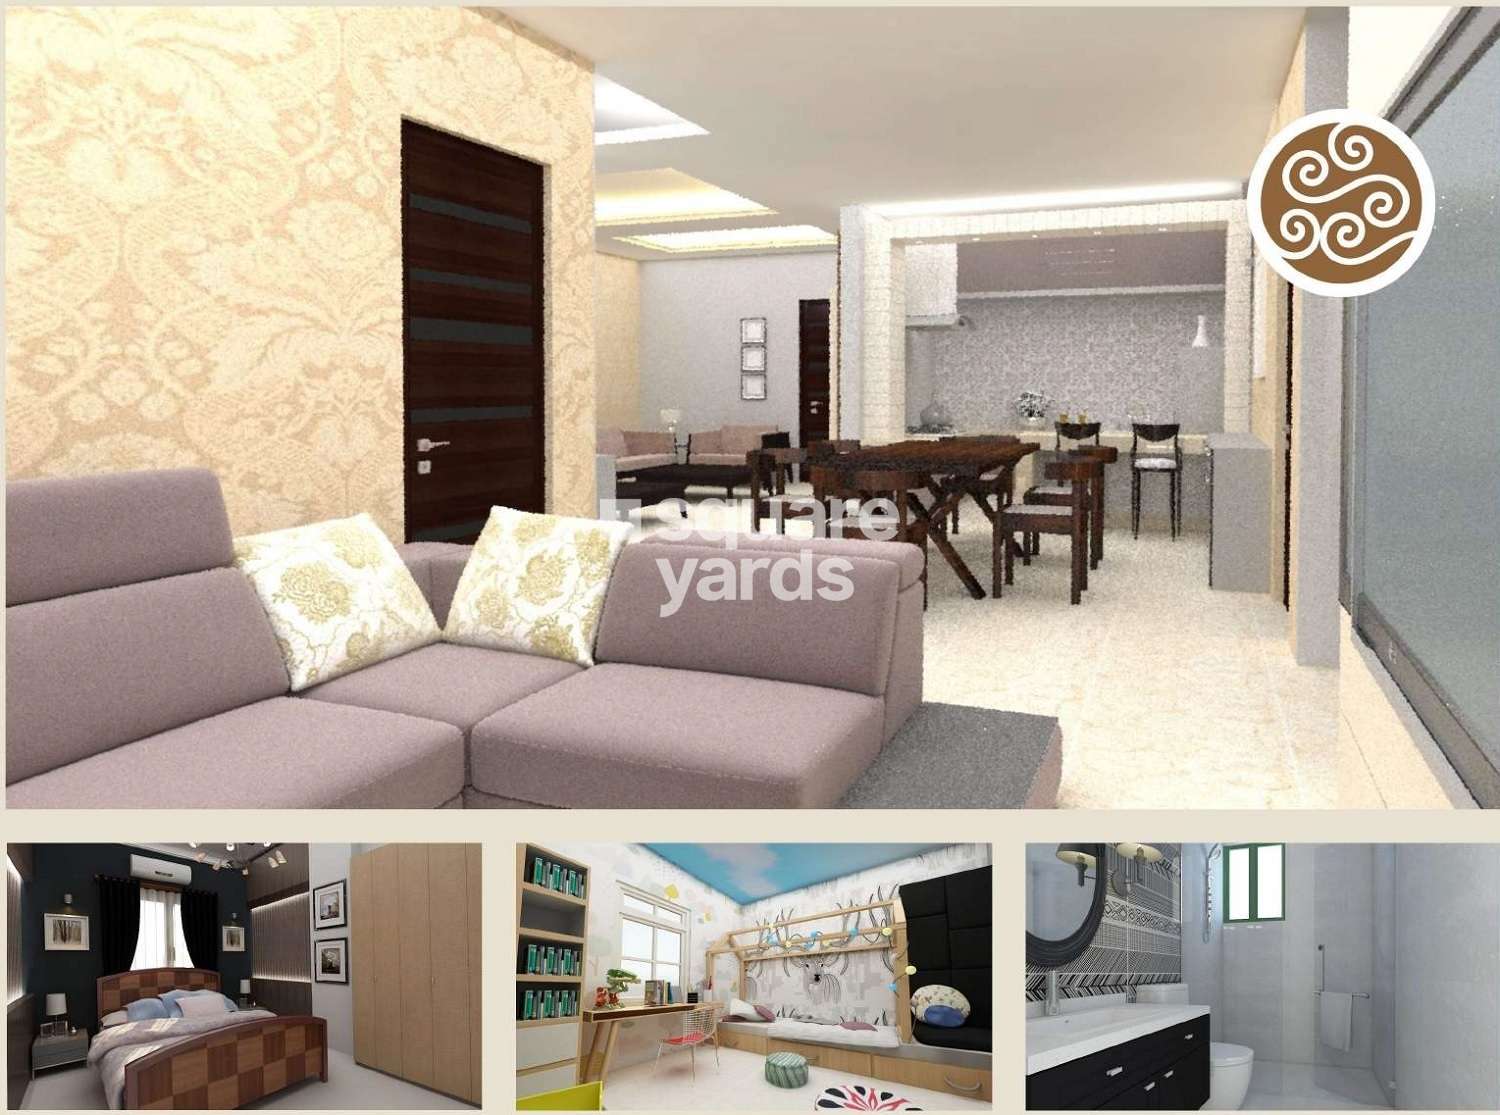 saritha splendor project apartment interiors1 8505